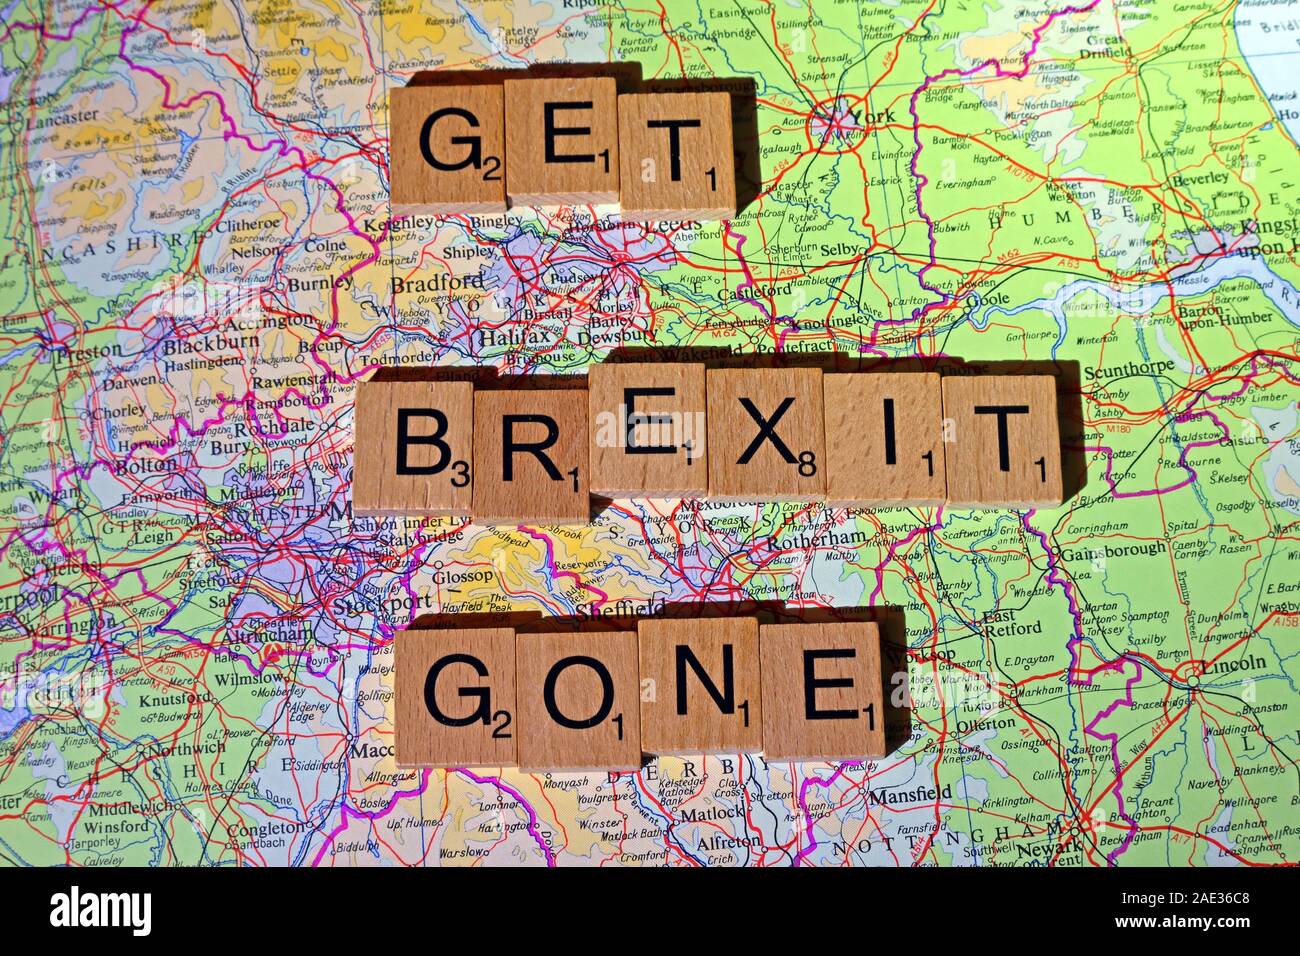 Obtenez plus Brexit écrit en lettres de Scrabble sur une carte du nord de l'Angleterre - Générale, élections, partis politiques dirigeants,parties,demandes,des doutes, Banque D'Images